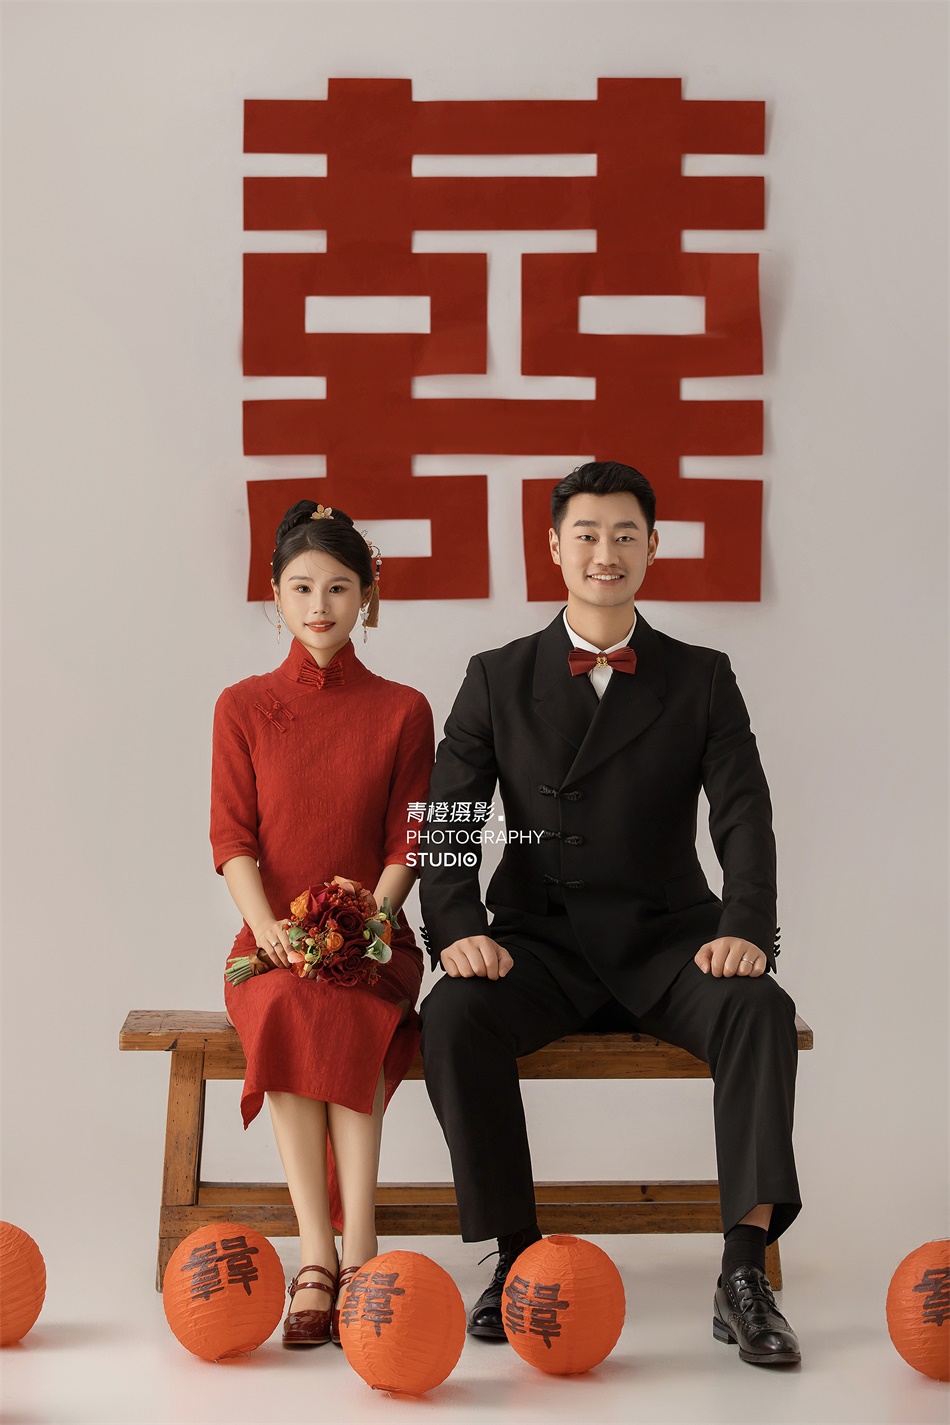 【内景】新中式喜嫁婚纱照，俏皮甜蜜的互动，满满都是喜嫁的幸福感